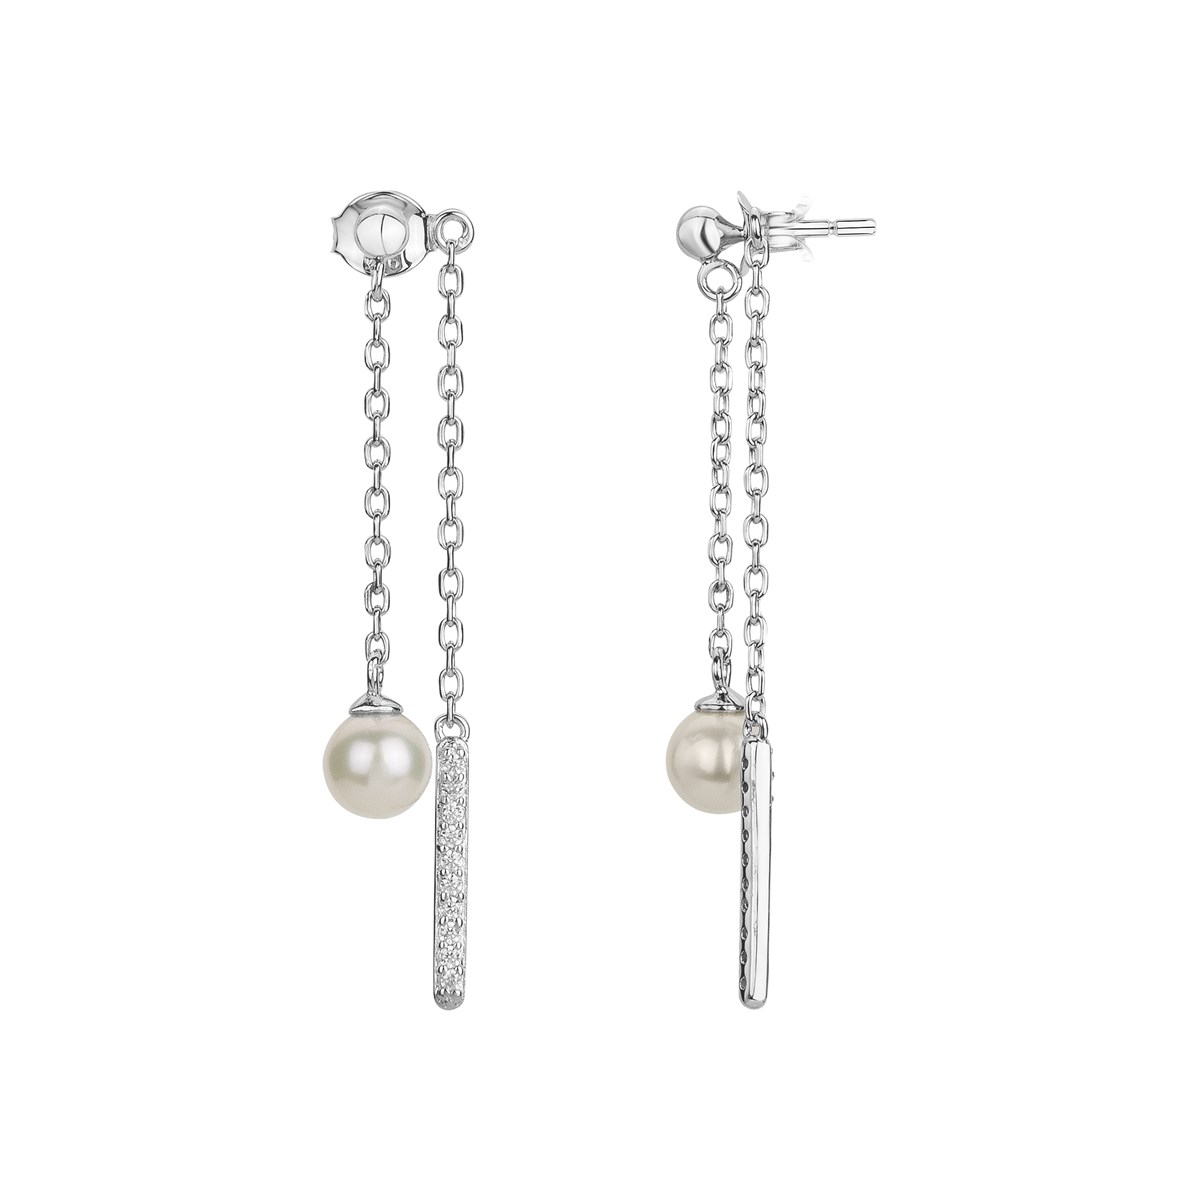 Boucles d'oreilles pendantes en Argent avec perle d'eau douce blanc